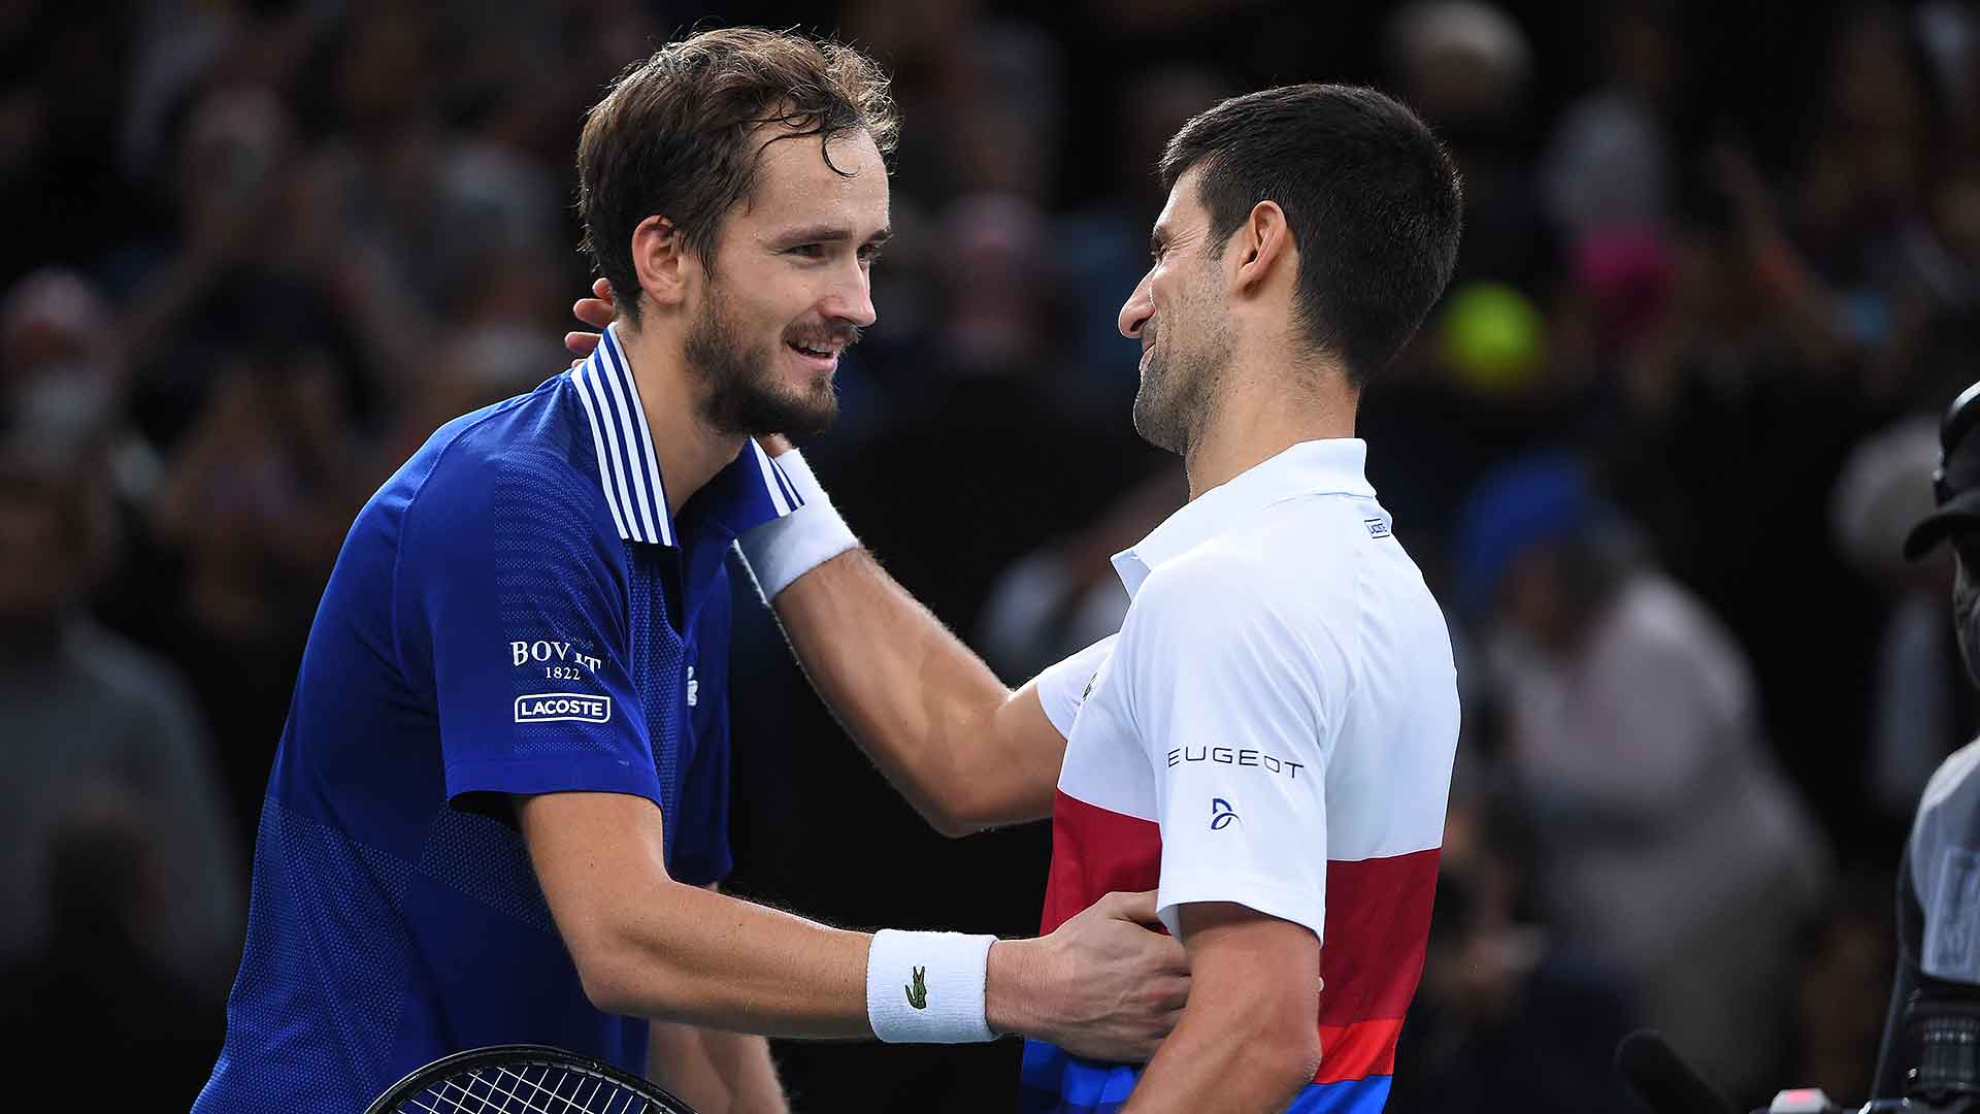 El ruso Medvedev perdió en Indian Wells y Djokovic vuelve a ser el número 1 del ranking ATP